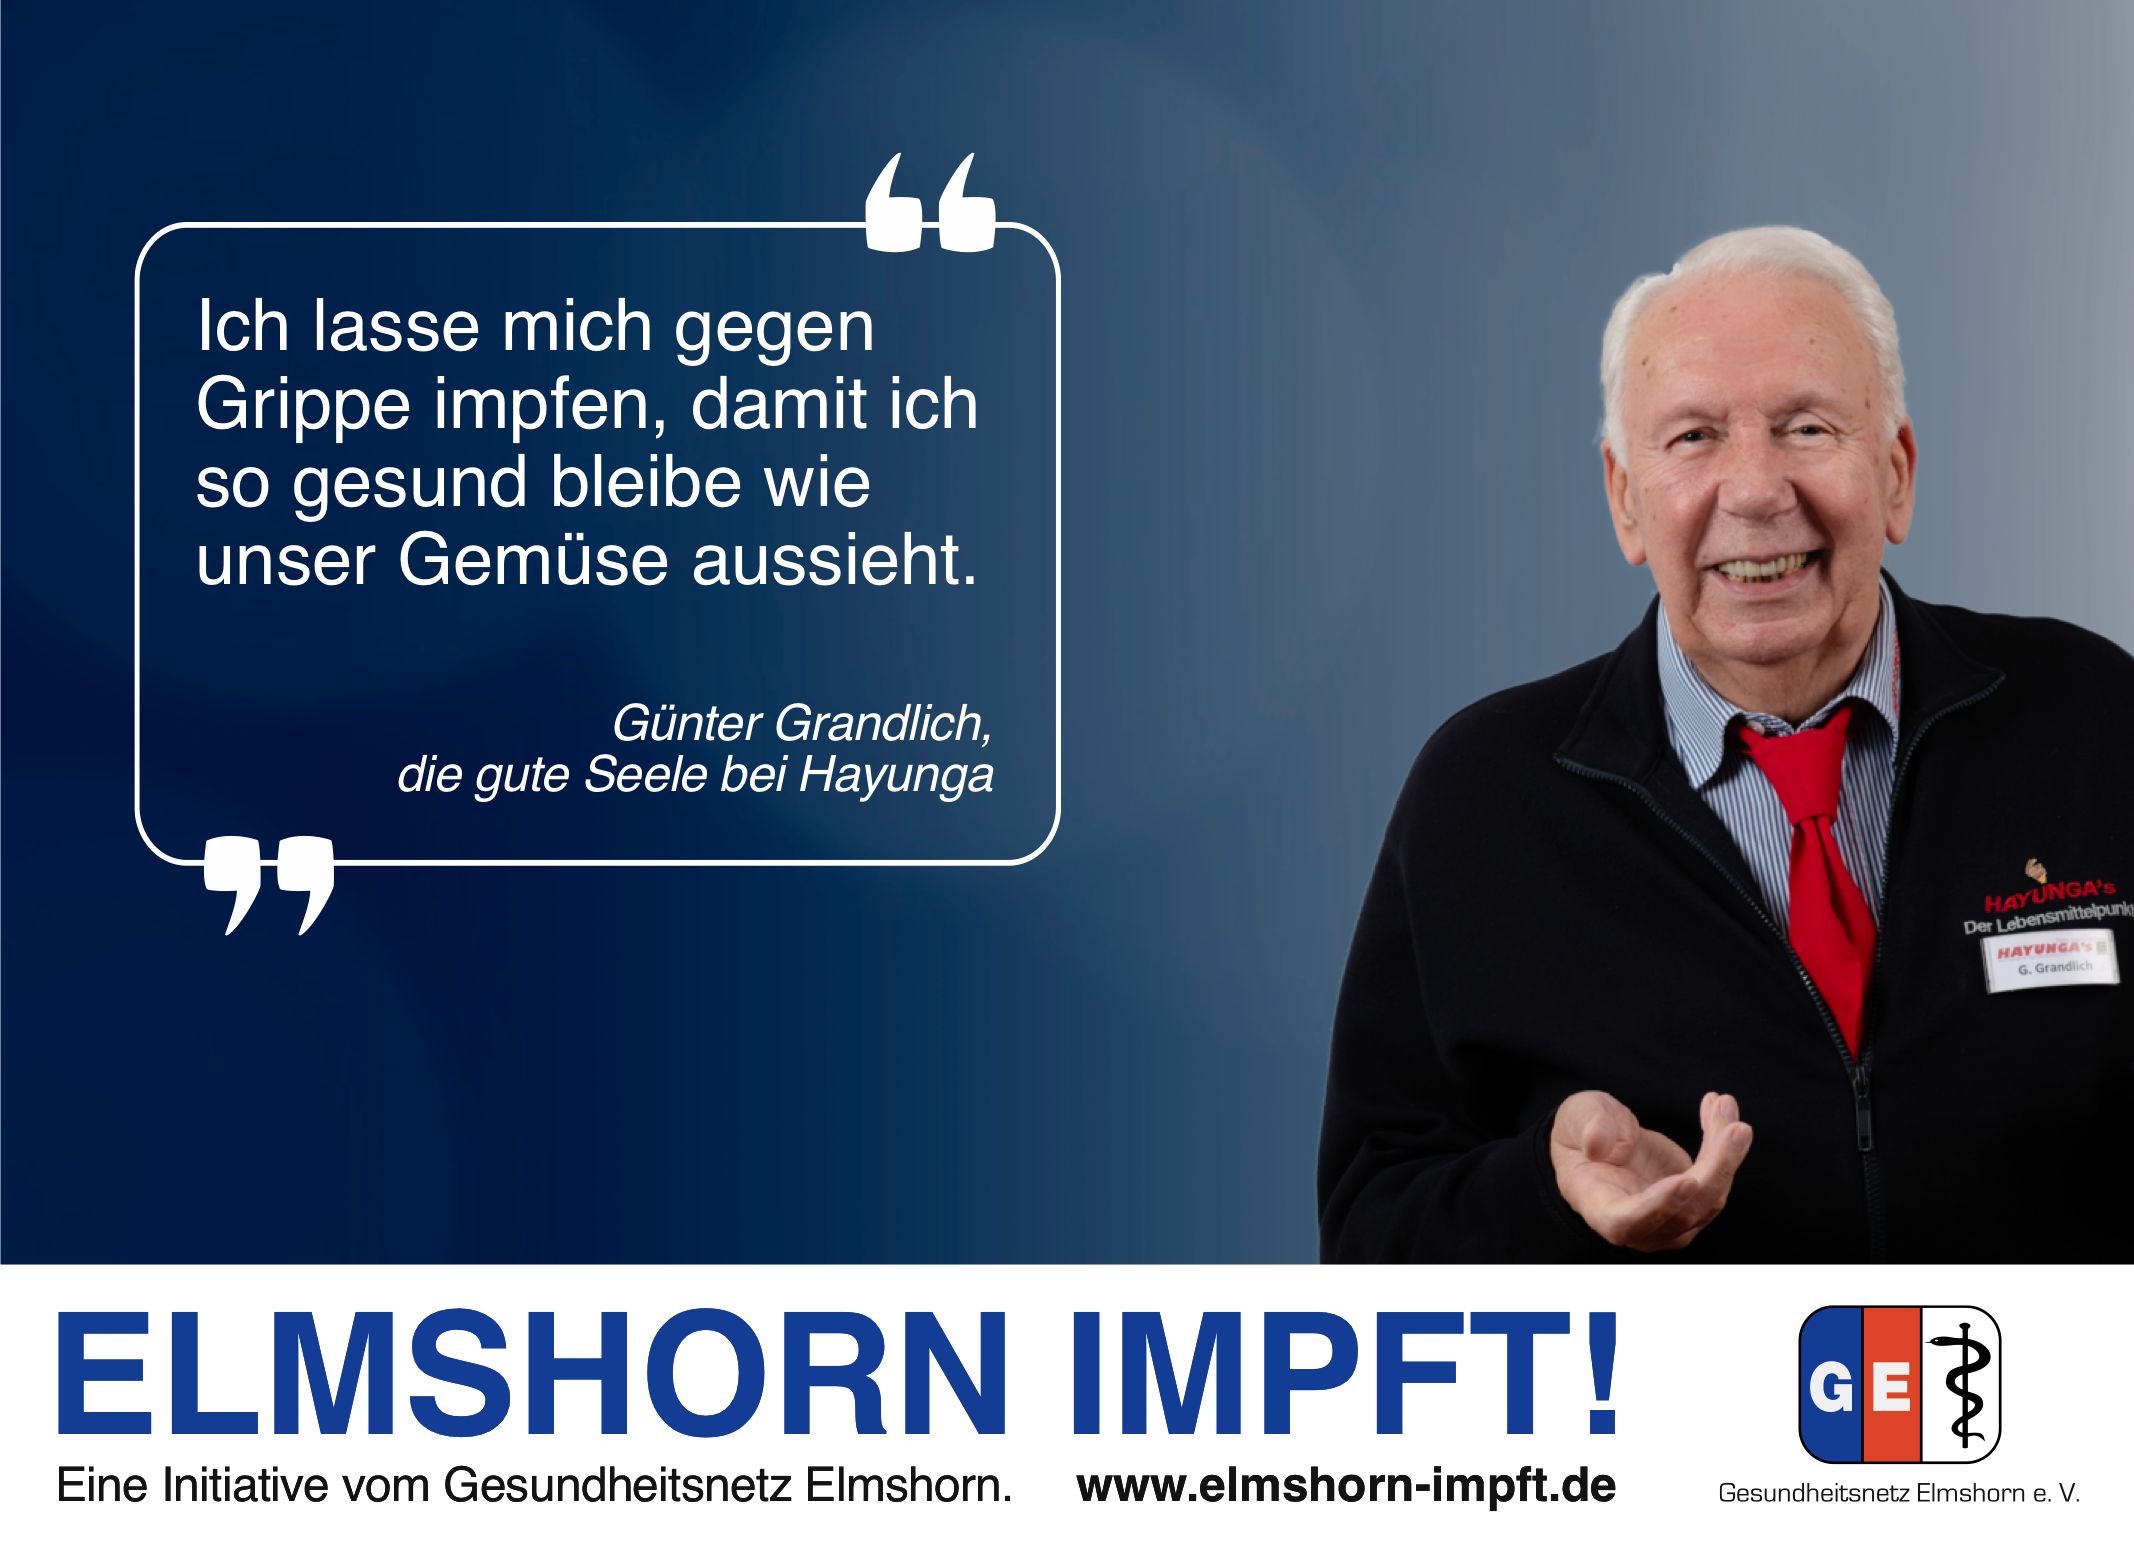 Elmshorn impft Testimonial - Günter Grandlich